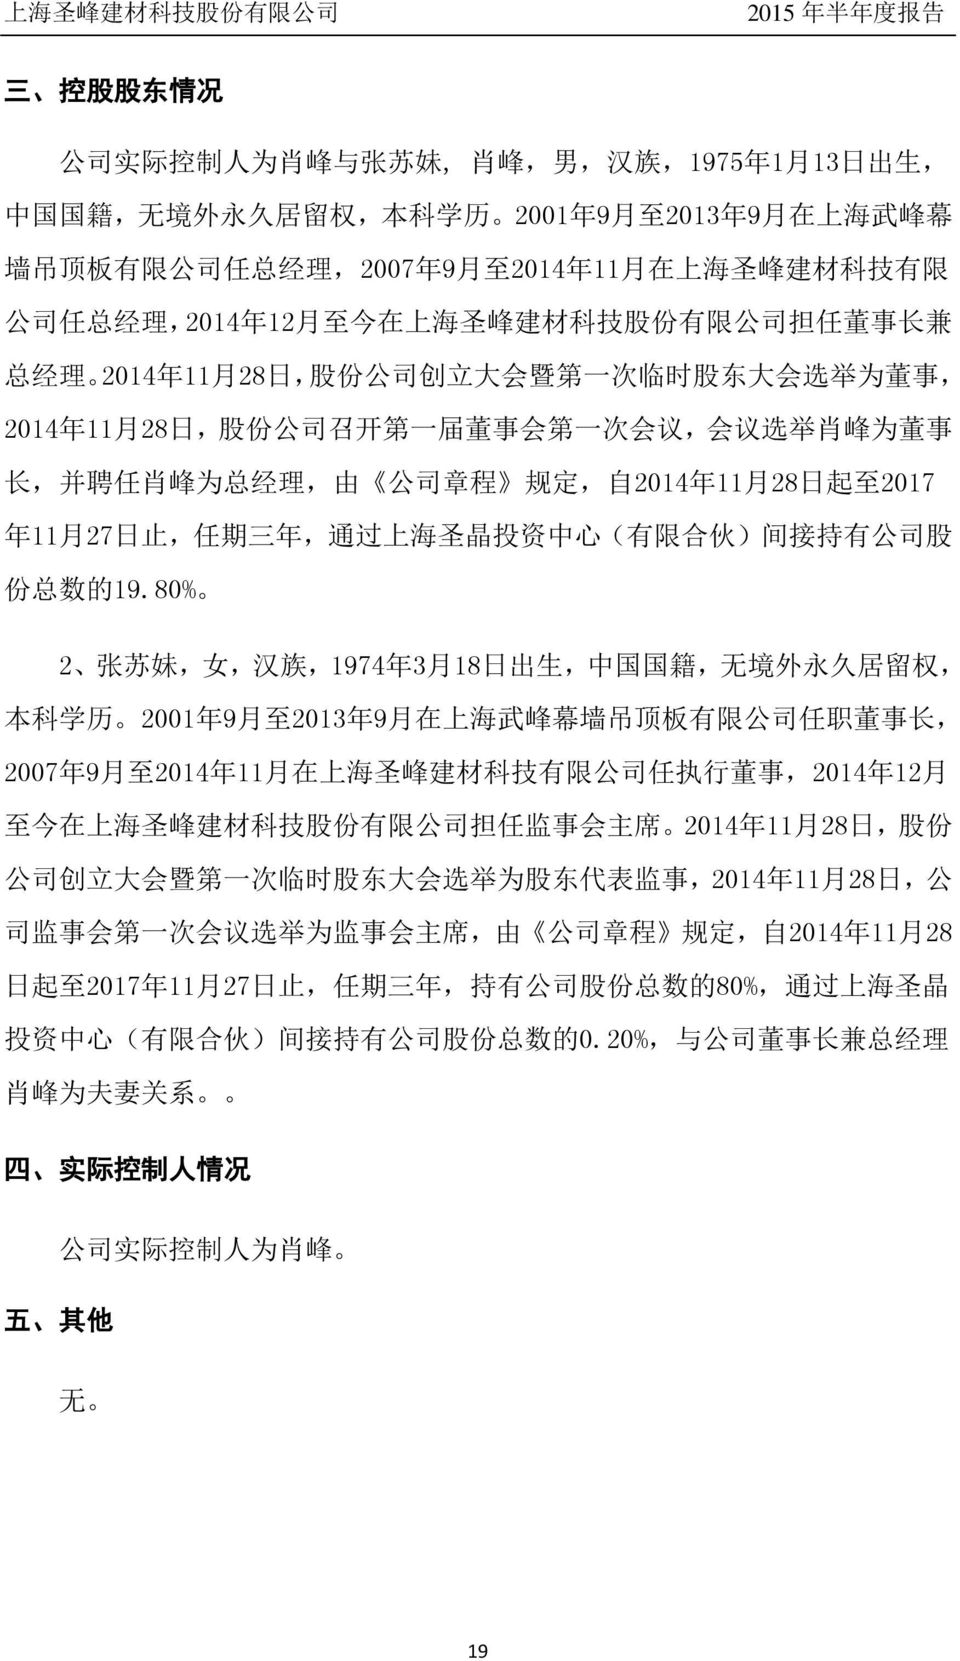 会 第 一 次 会 议, 会 议 选 举 肖 峰 为 董 事 长, 并 聘 任 肖 峰 为 总 经 理, 由 公 司 章 程 规 定, 自 2014 年 11 月 28 日 起 至 2017 年 11 月 27 日 止, 任 期 三 年, 通 过 上 海 圣 晶 投 资 中 心 ( 有 限 合 伙 ) 间 接 持 有 公 司 股 份 总 数 的 19.